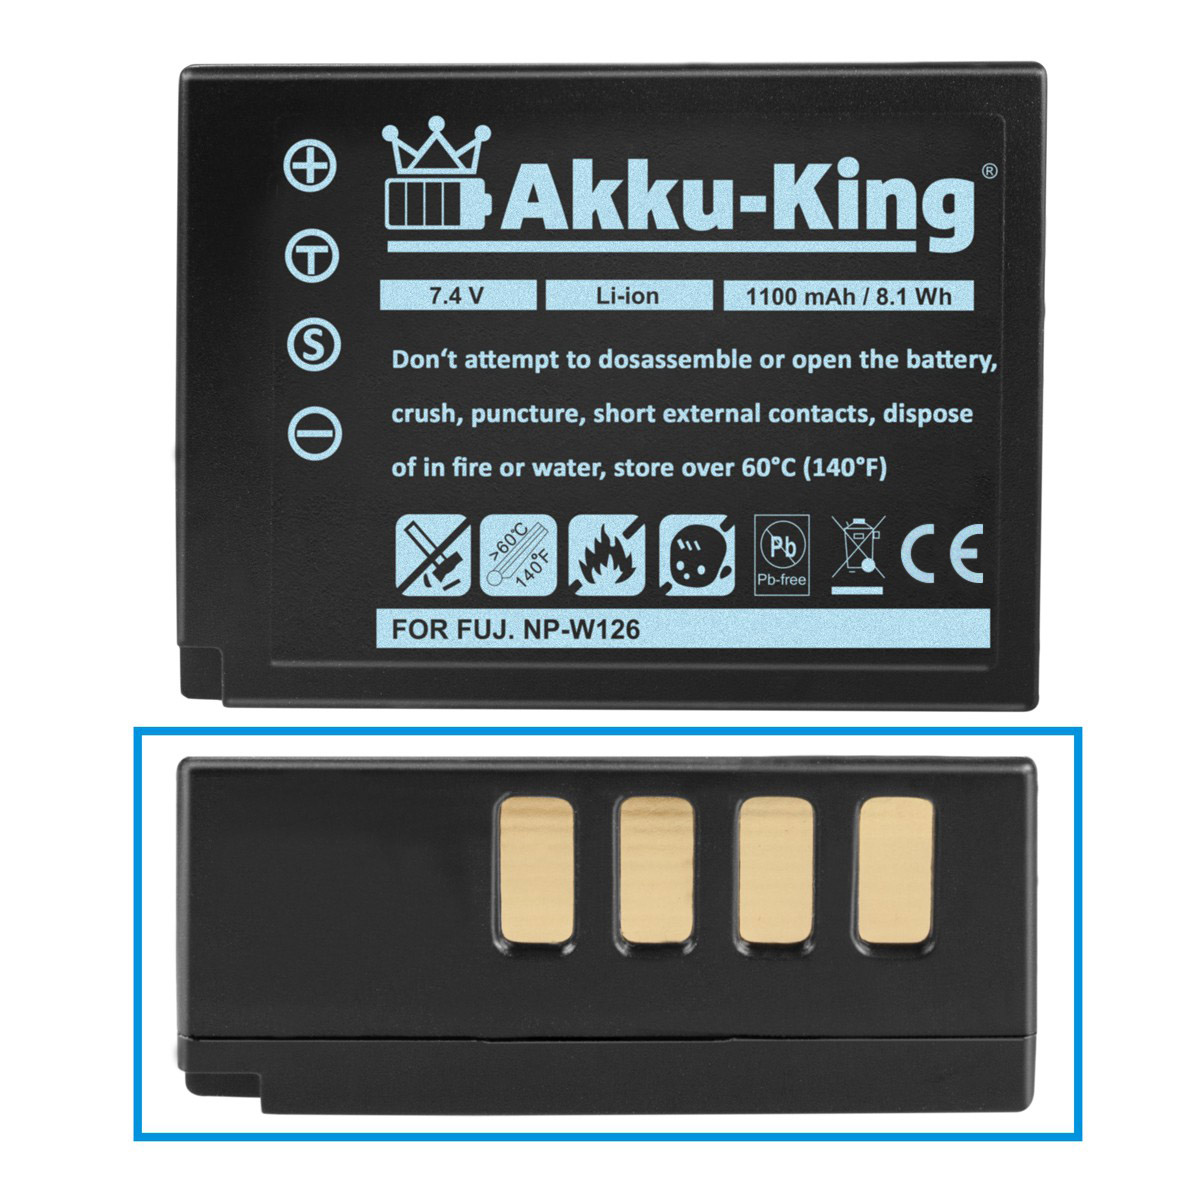 7.4 Akku kompatibel mit Kamera-Akku, NP-W126 Volt, 1100mAh Fuji AKKU-KING Li-Ion